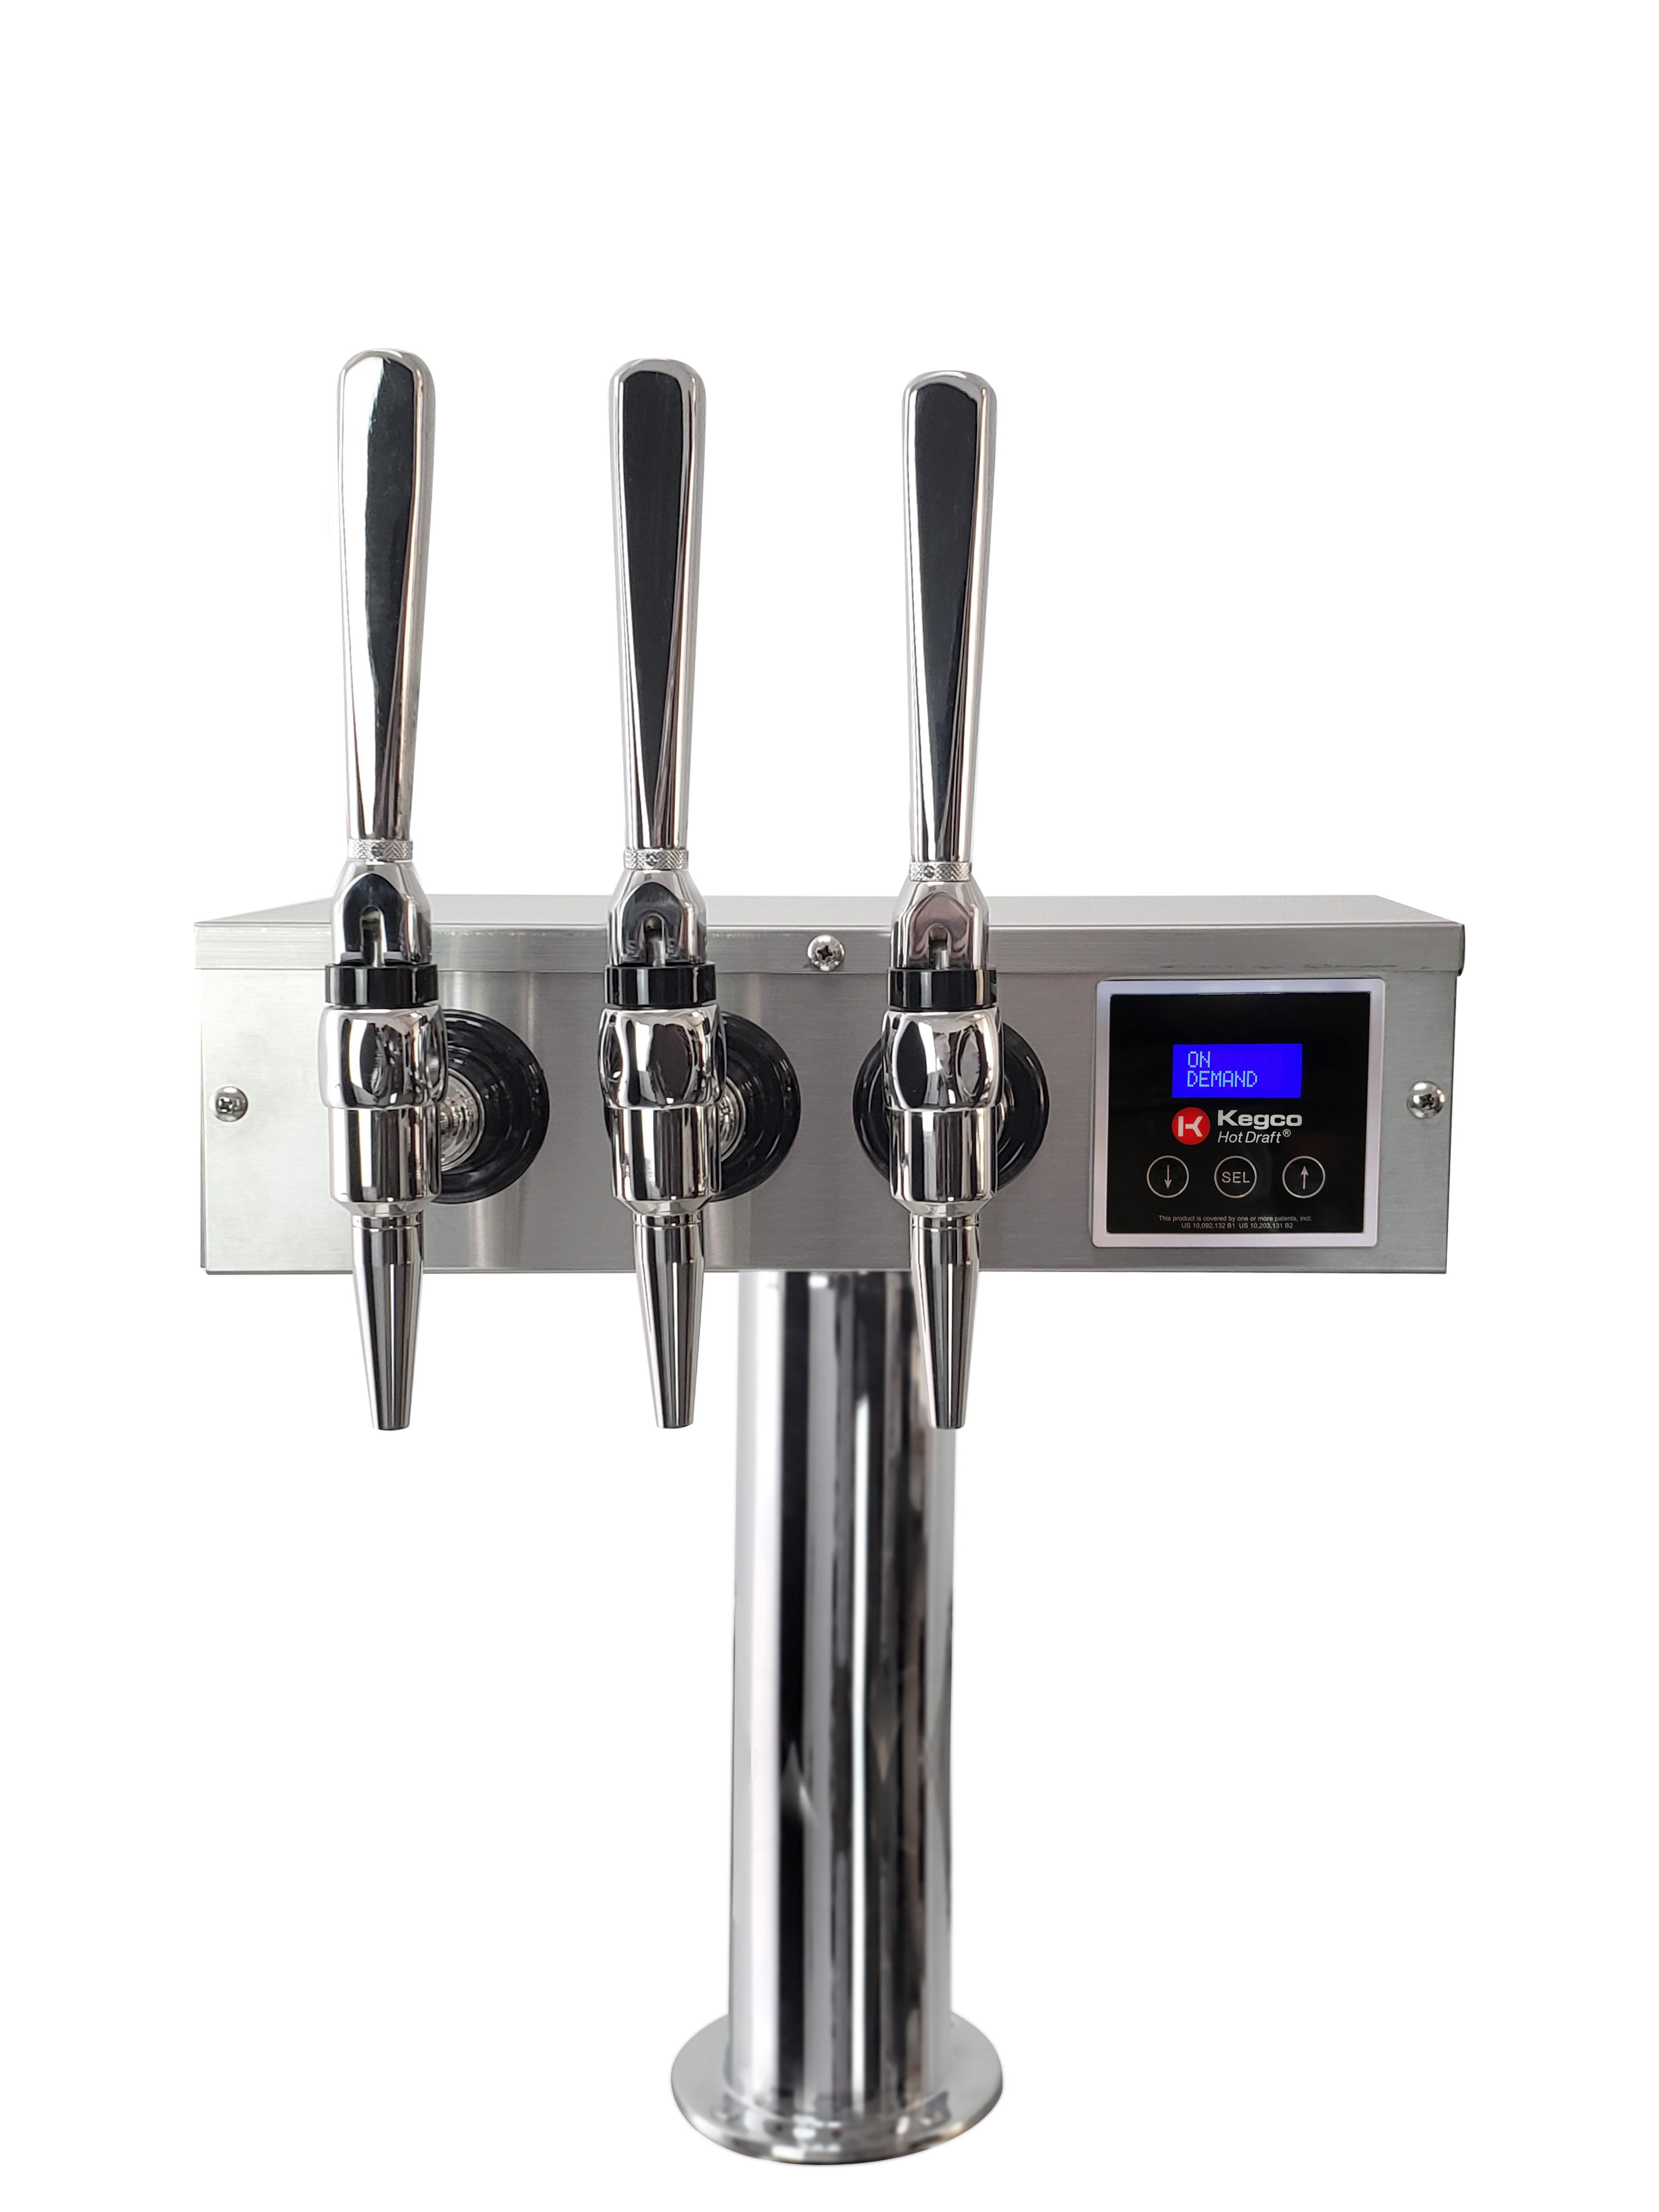 Kegco K309-HDT-3S Triple Faucet Digital Kegerator Hot Draft ® Tap Coffee Keg Dispenser - Stainless Steel